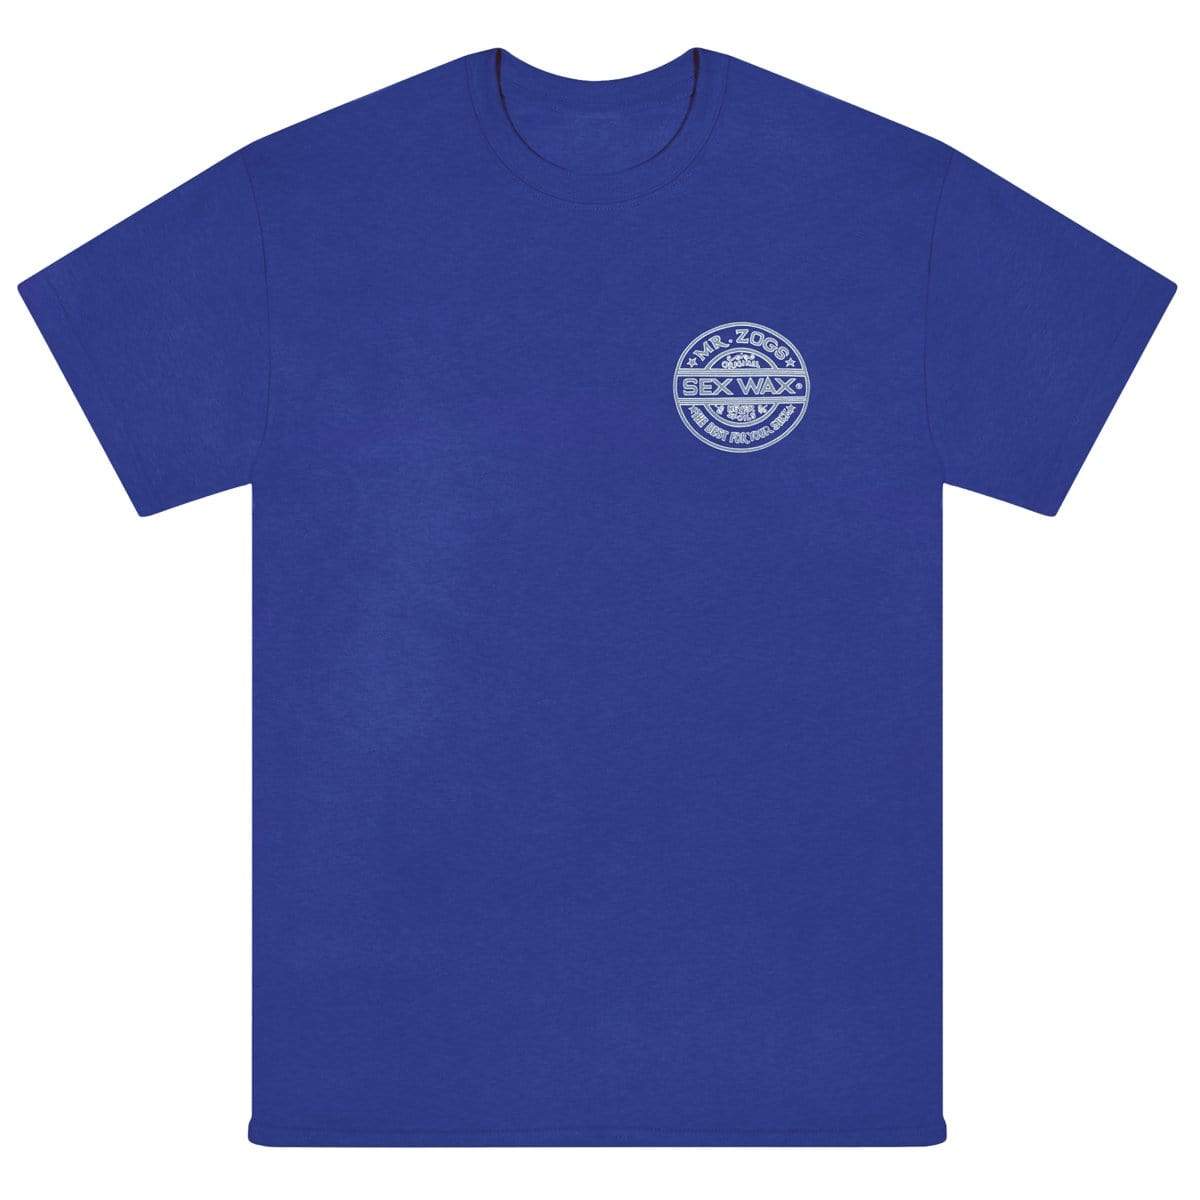 Sexwax Pinstripe T-Shirt blue